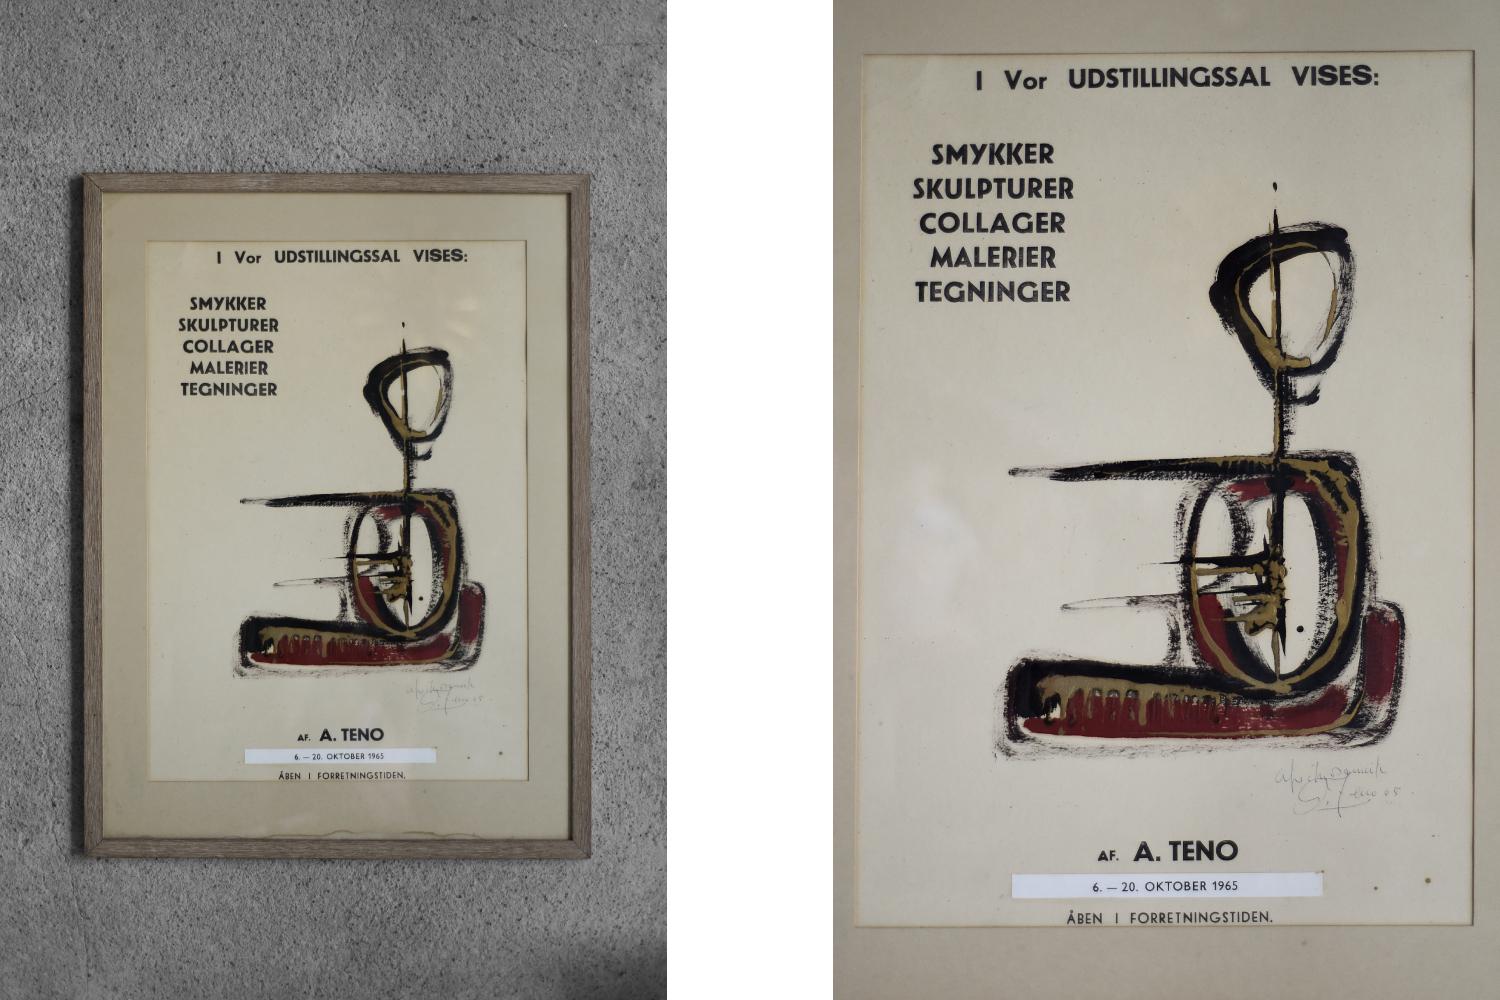 Affiche originale de l'exposition de l'œuvre d'Aurelio Teno, du 6 au 20 octobre 1965 à Copenhague. L'exposition comprenait des sculptures, des bijoux, des collages, des dessins et des peintures de l'auteur. L'affiche porte la signature de l'auteur